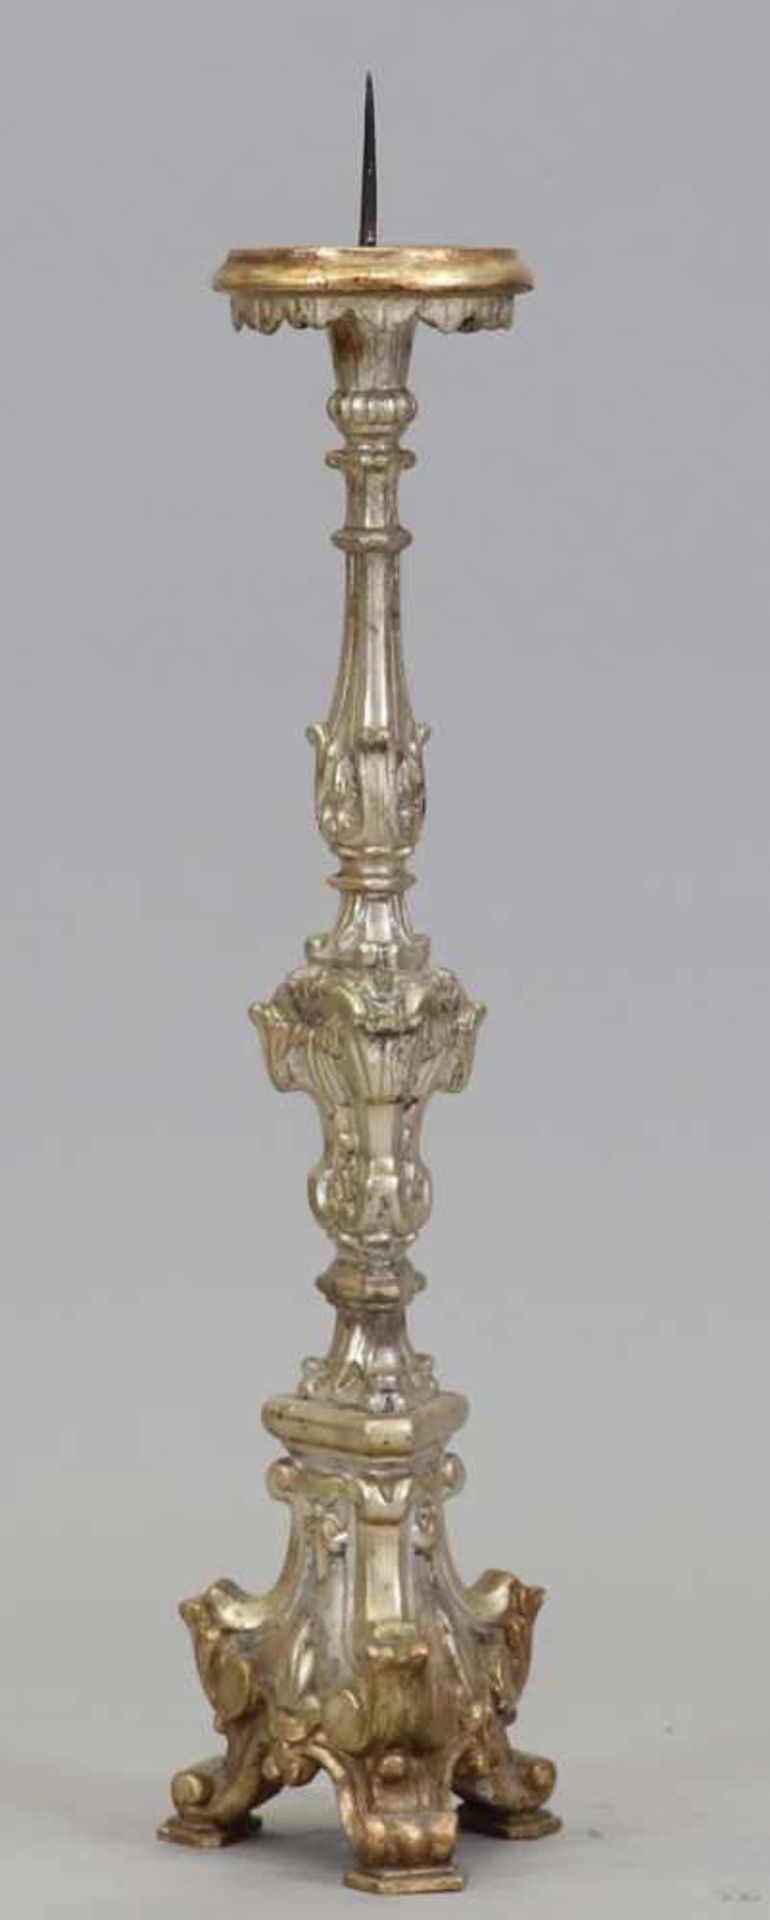 AltarleucherSüdtirol, um 1780. Holz, geschnitzt. Silber gefasst. H. 88 cm. Rest.- - -22.00 % buyer's